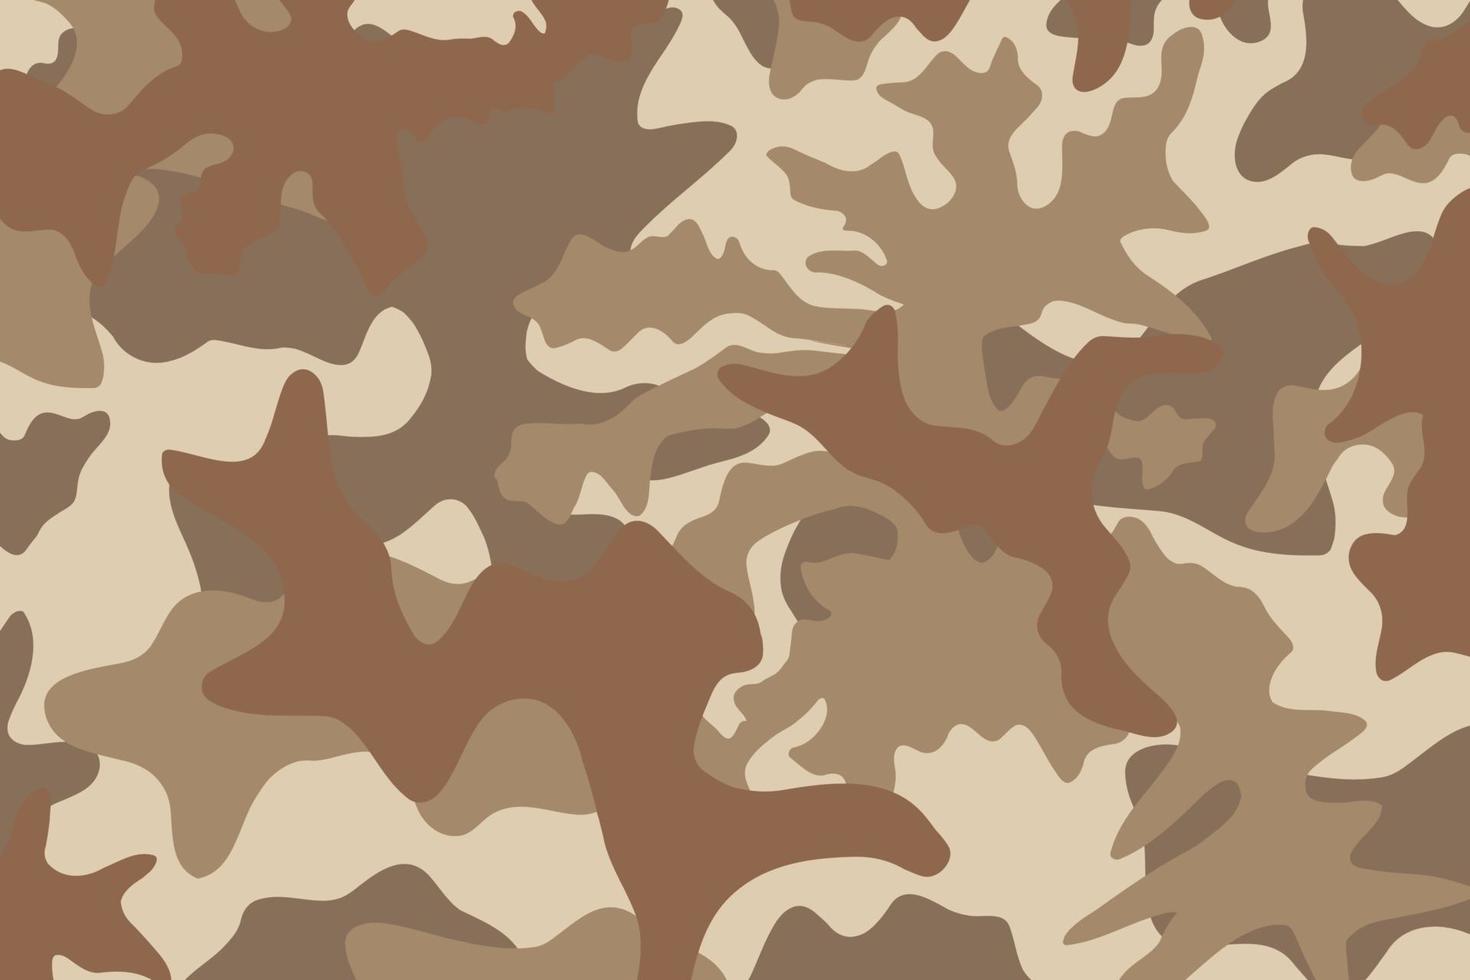 ejército rayas patrón de camuflaje marrón desierto arena campo de batalla militar amplio fondo vector